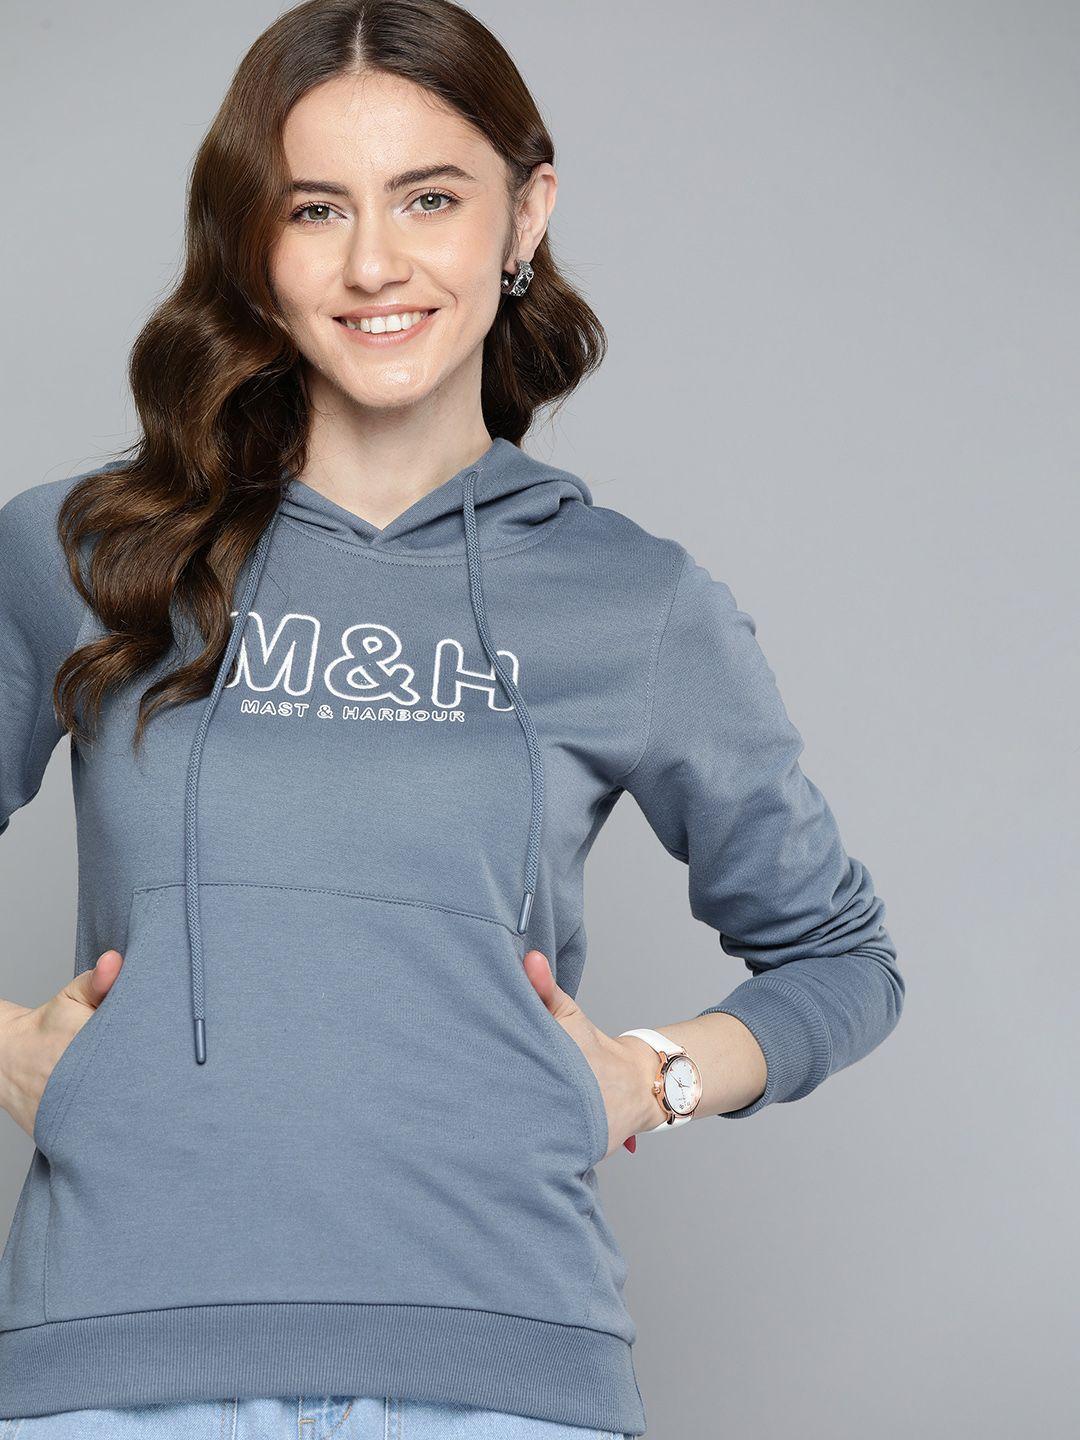 mast & harbour brand logo printed hooded sweatshirt